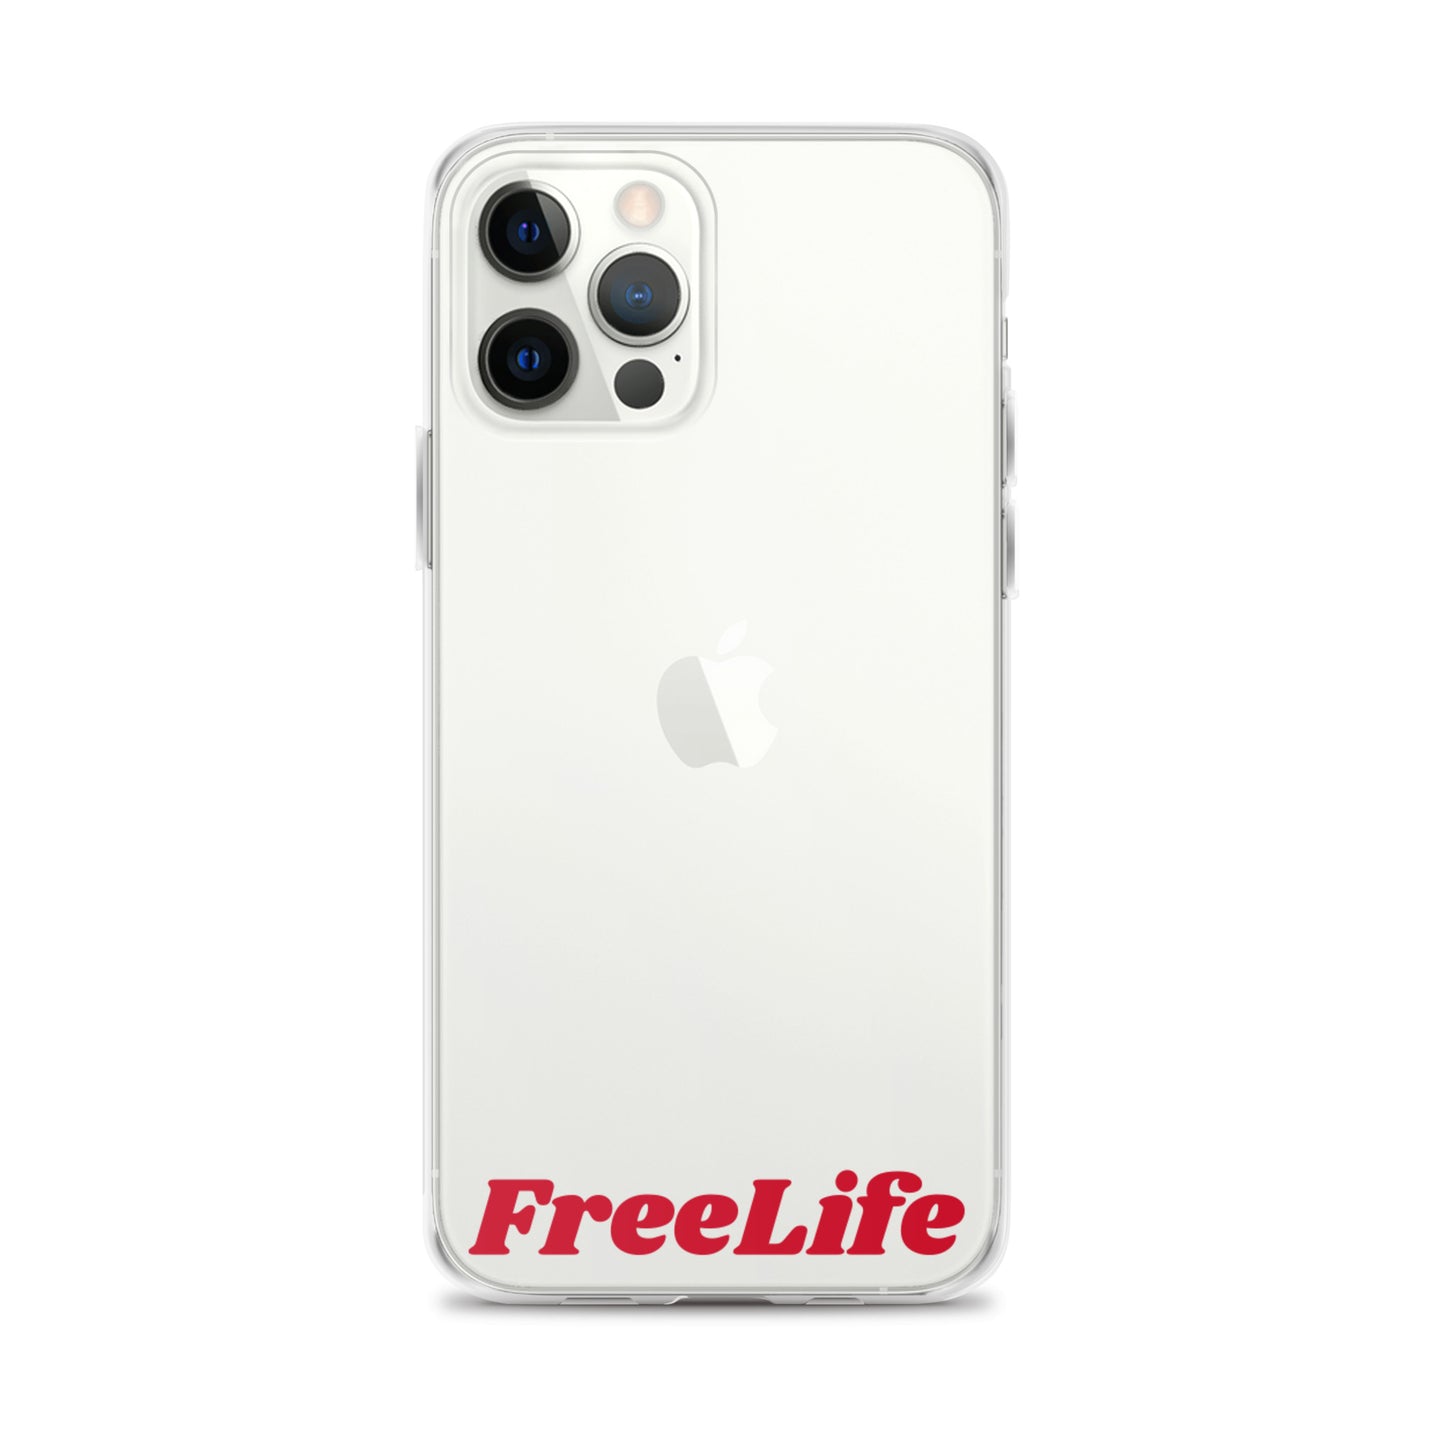 FL iPhone-Case